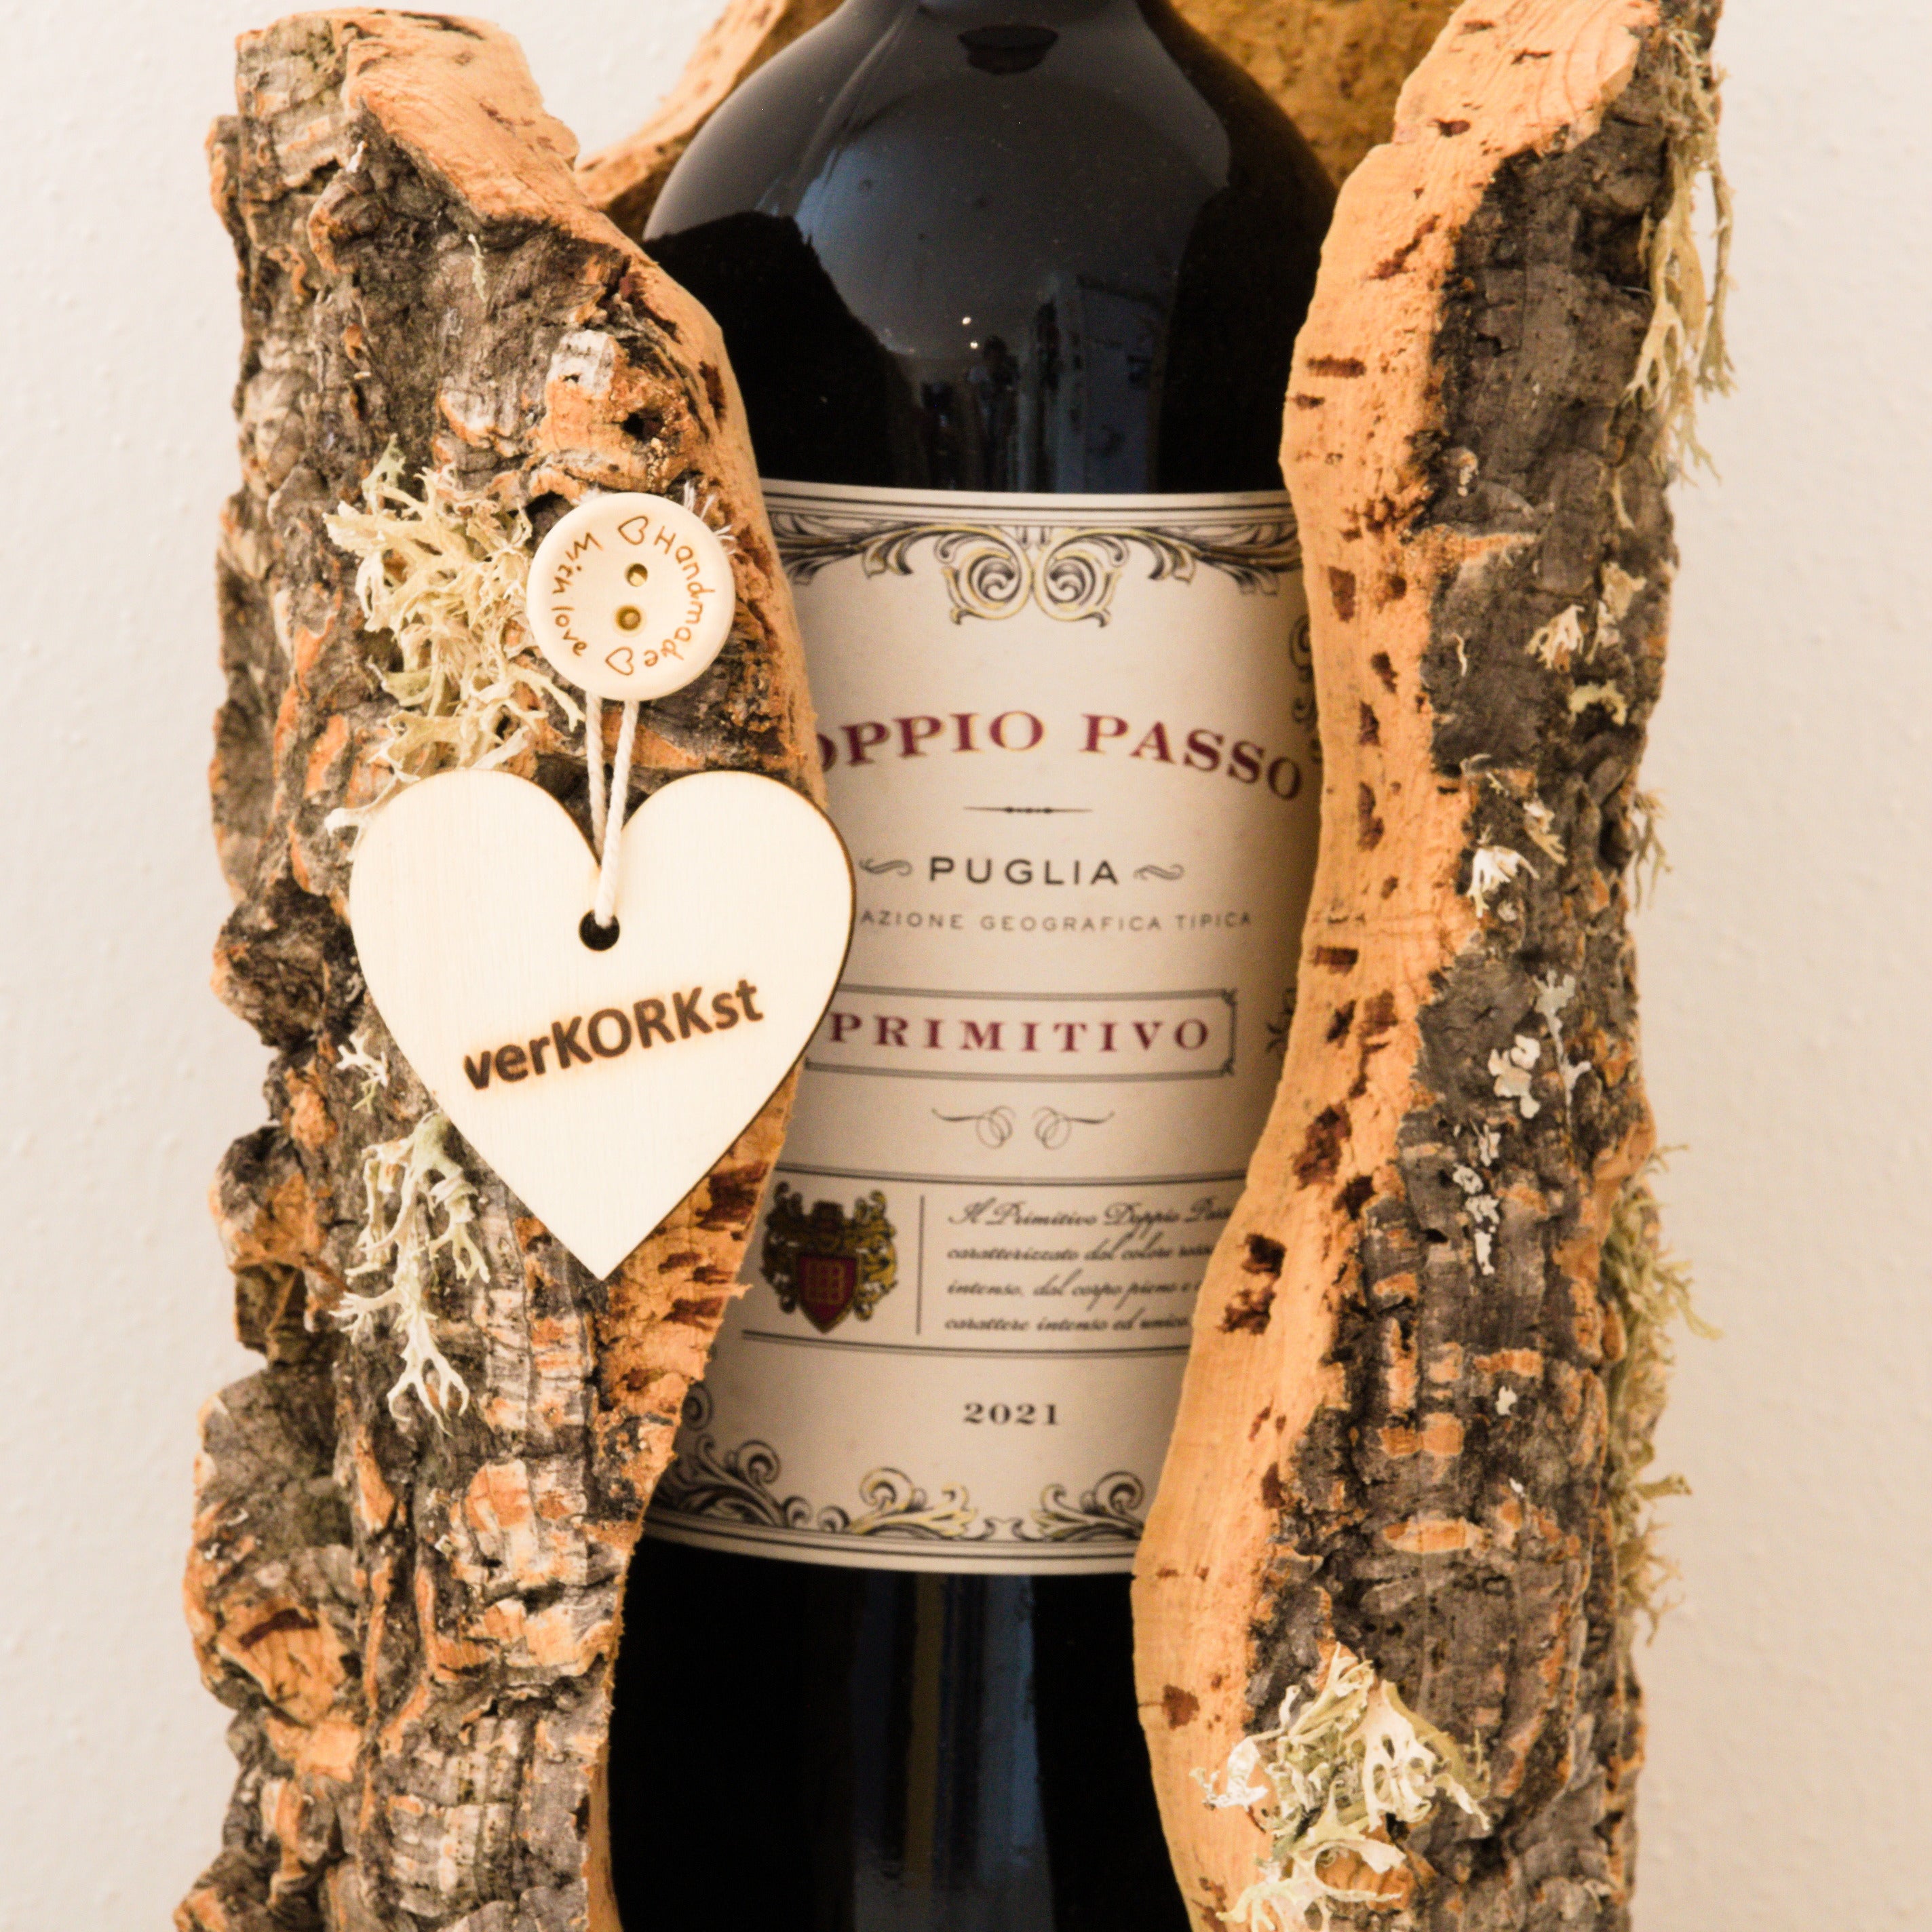 verKORKst stand vino premium in sughero * presentazione di bottiglie di vino * servizio di vino * decorazione di vino * lanterna